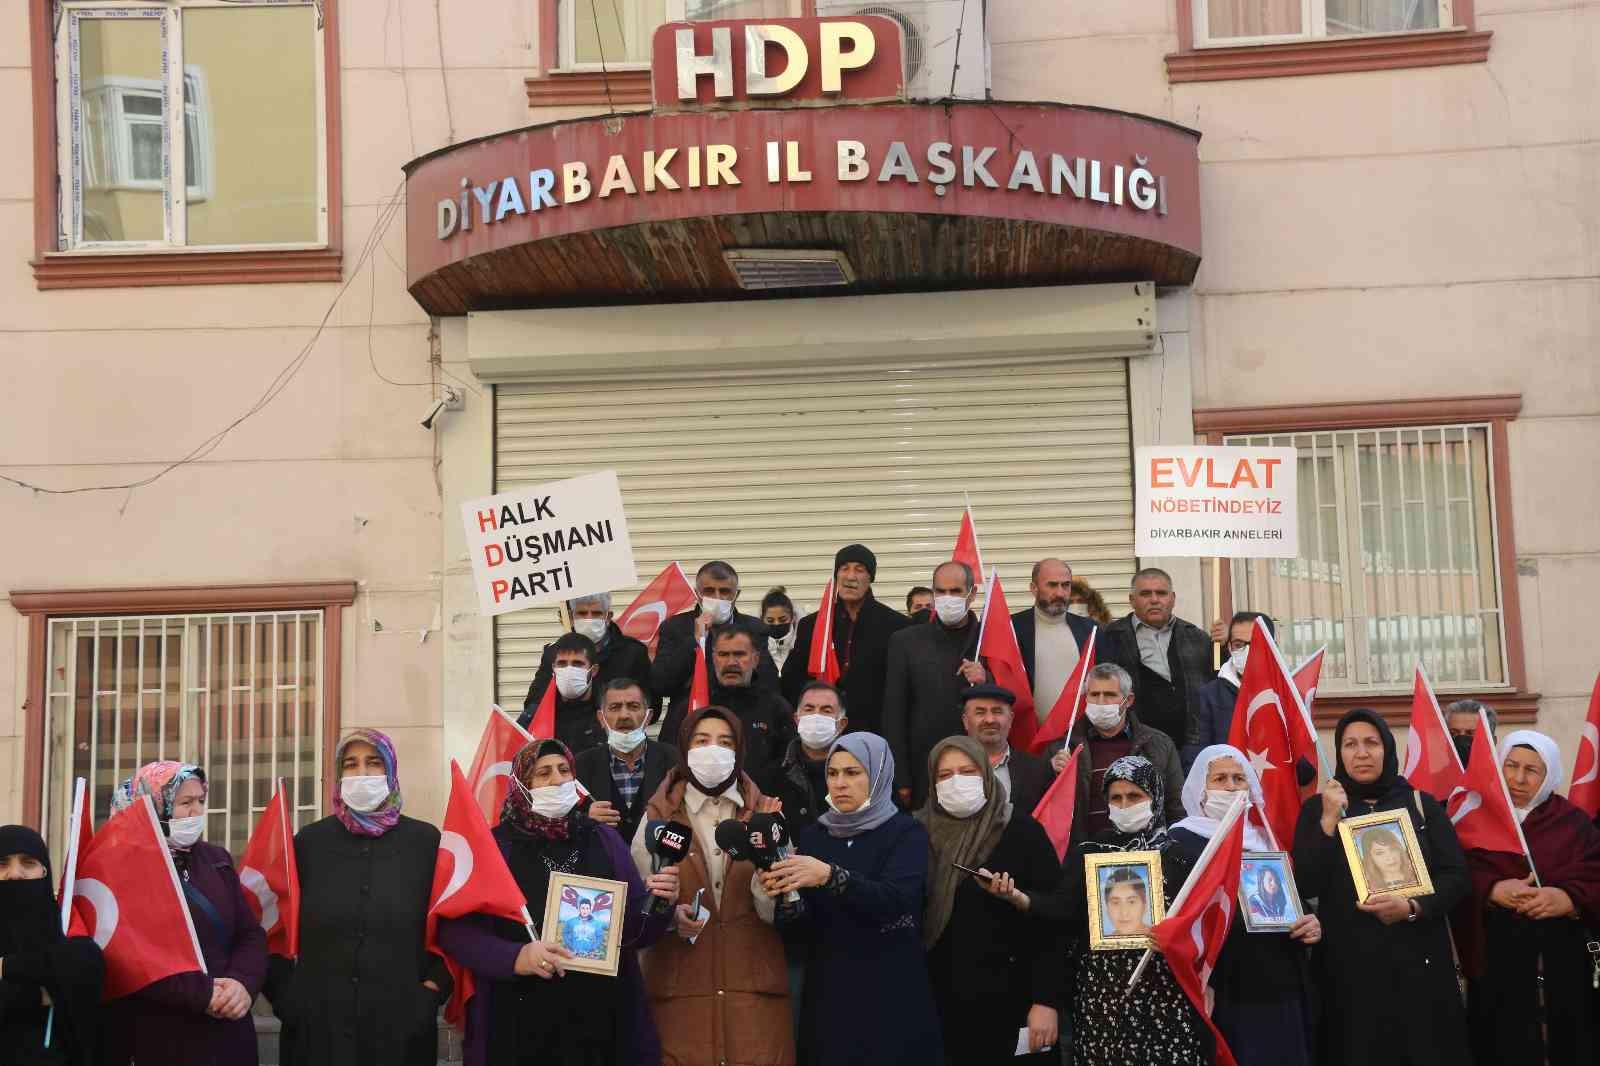 Evlat Nöbetindeki Ailelerden CHP Lideri Kılıçdaroğlu’na Tepki